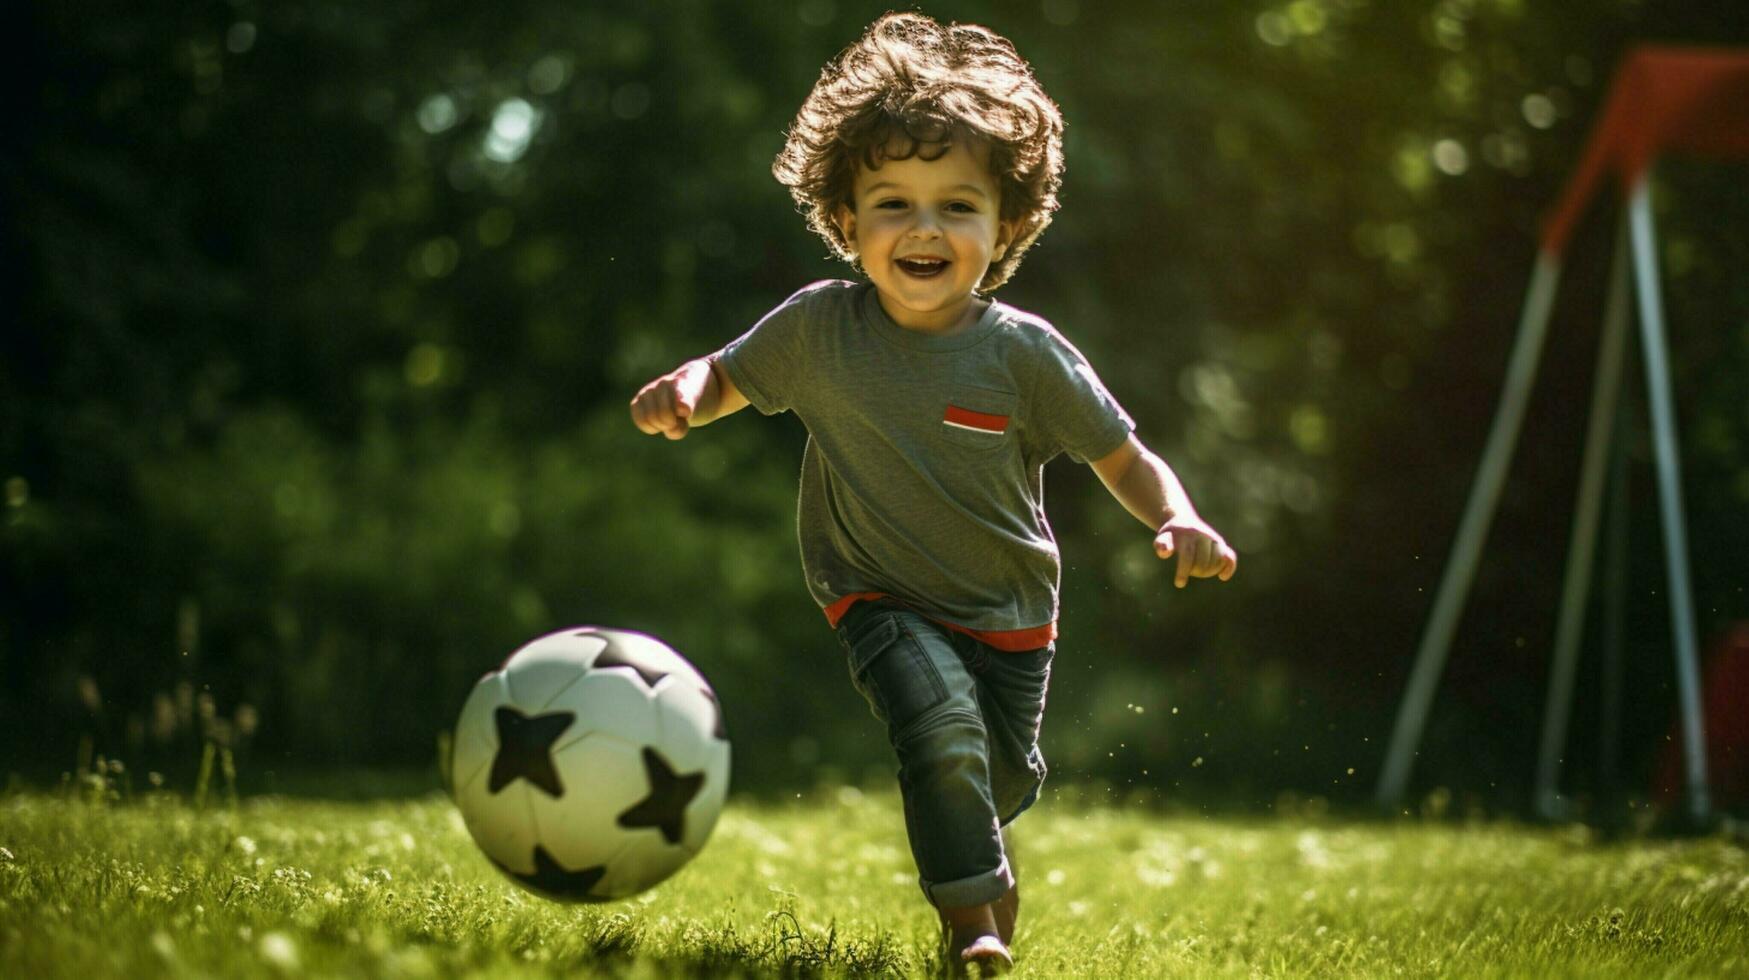 kind beoefenen voetbal vaardigheden genieten van buitenshuis werkzaamheid foto